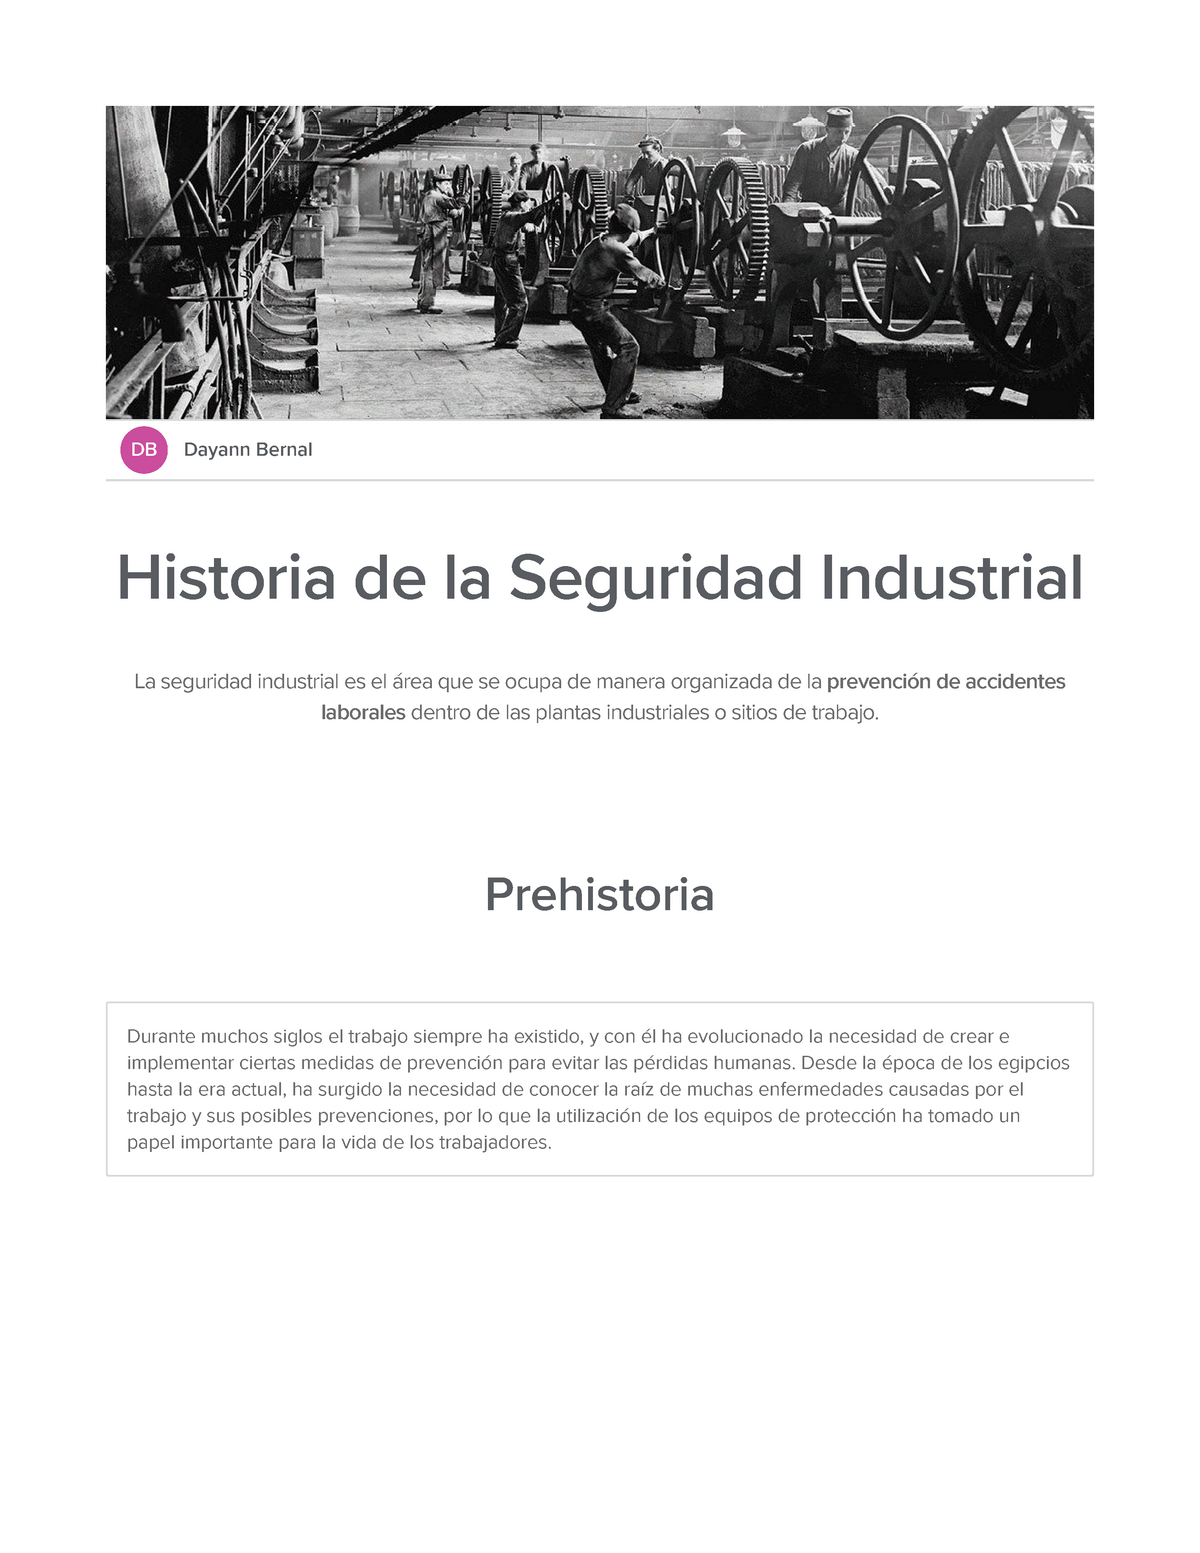 Historia De La Seguridad Industrial Sutori Db Dayann Bernal Historia De La Seguridad 6377